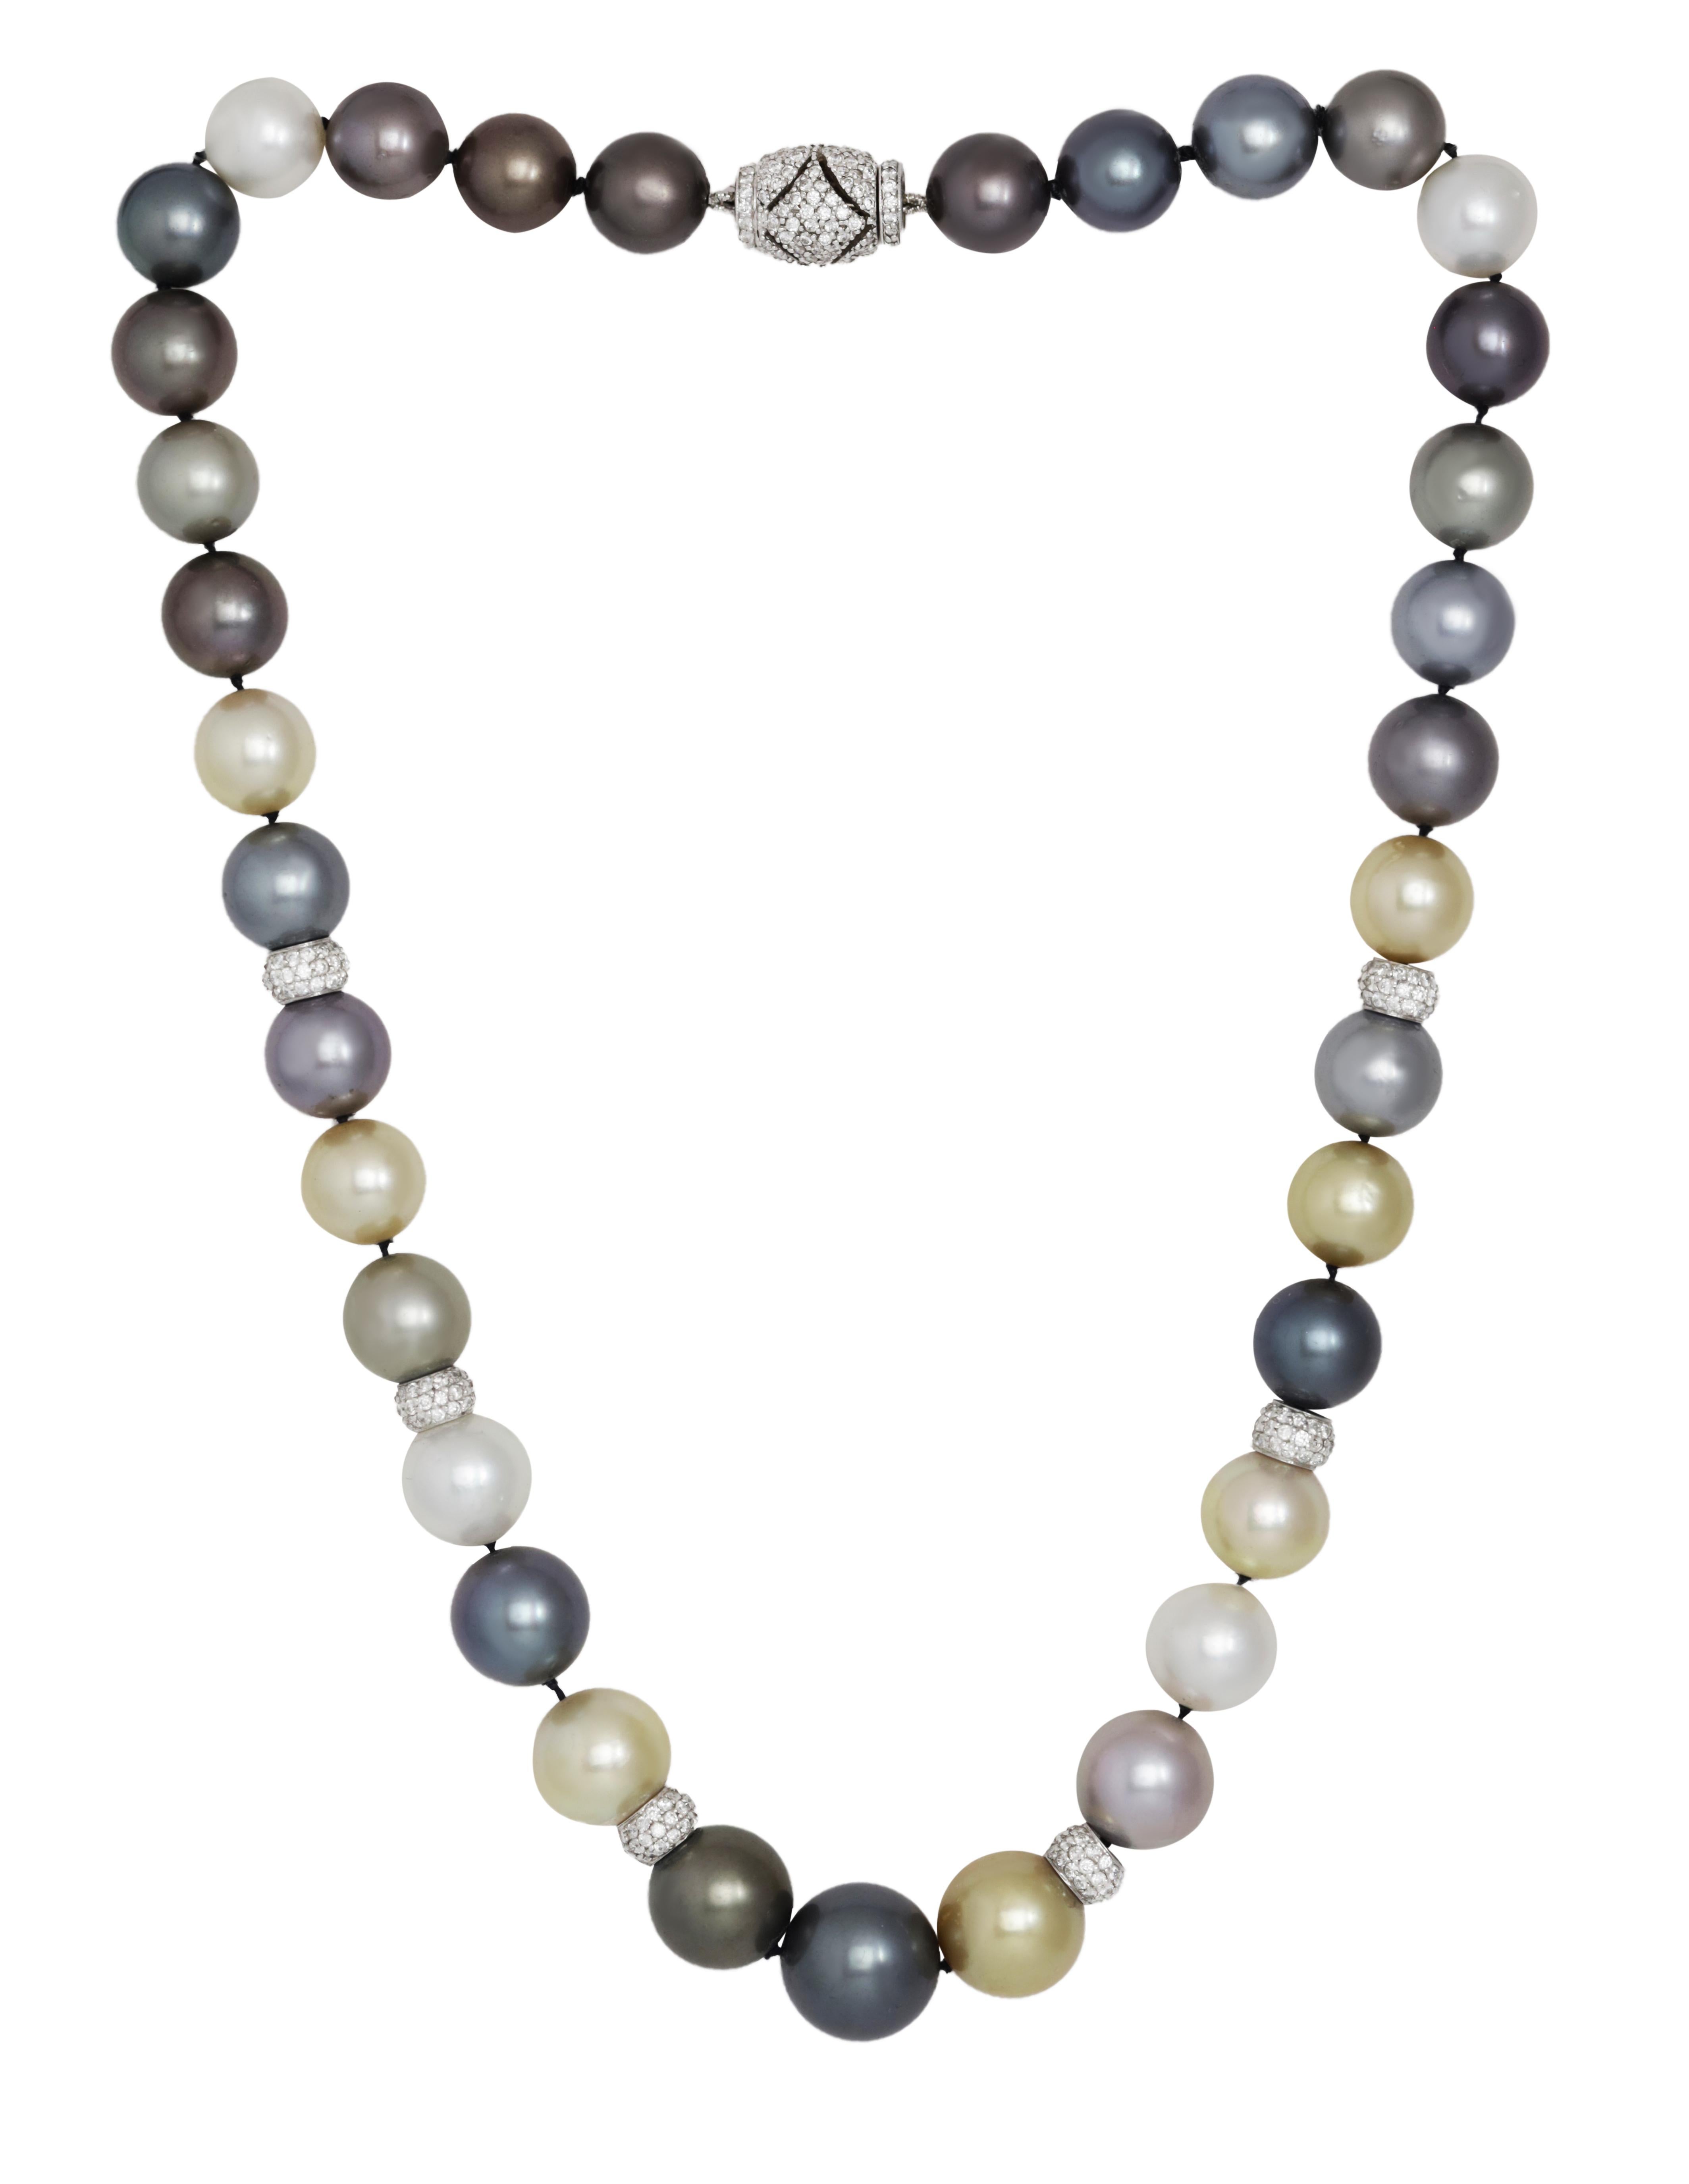 Collier de diamants et de perles orné de perles du sud de Tahiti de 10-14 mm et de rondelles contenant 5,25 cts tw de diamants ronds micropavés.
A&M est un fournisseur de premier plan de bijoux fins de qualité supérieure depuis plus de 35 ans.
Diana